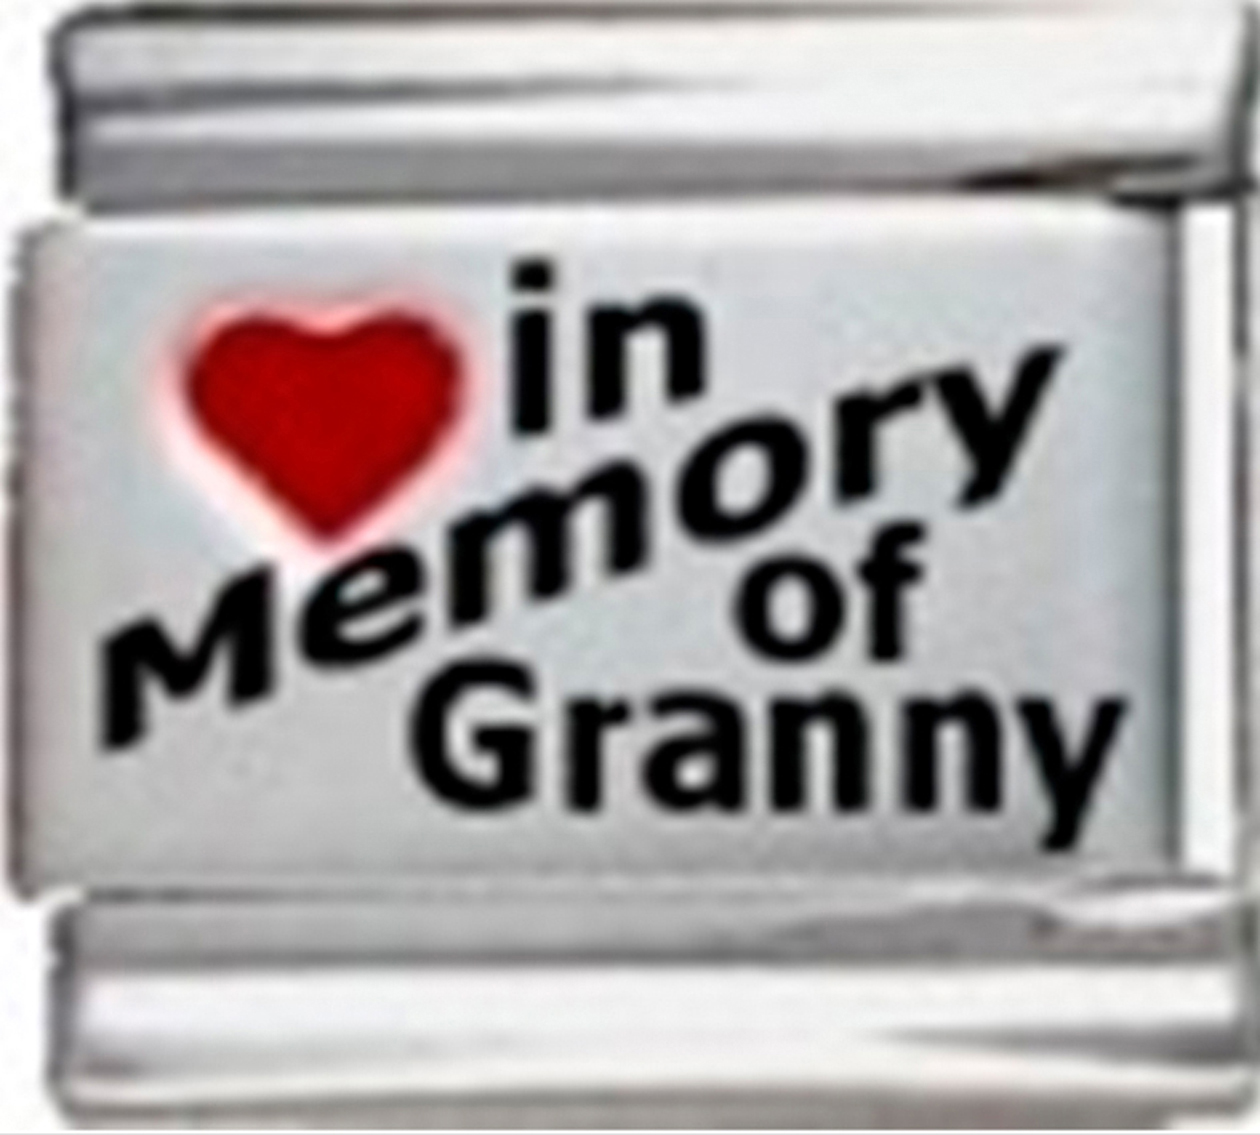 IM014-Granny